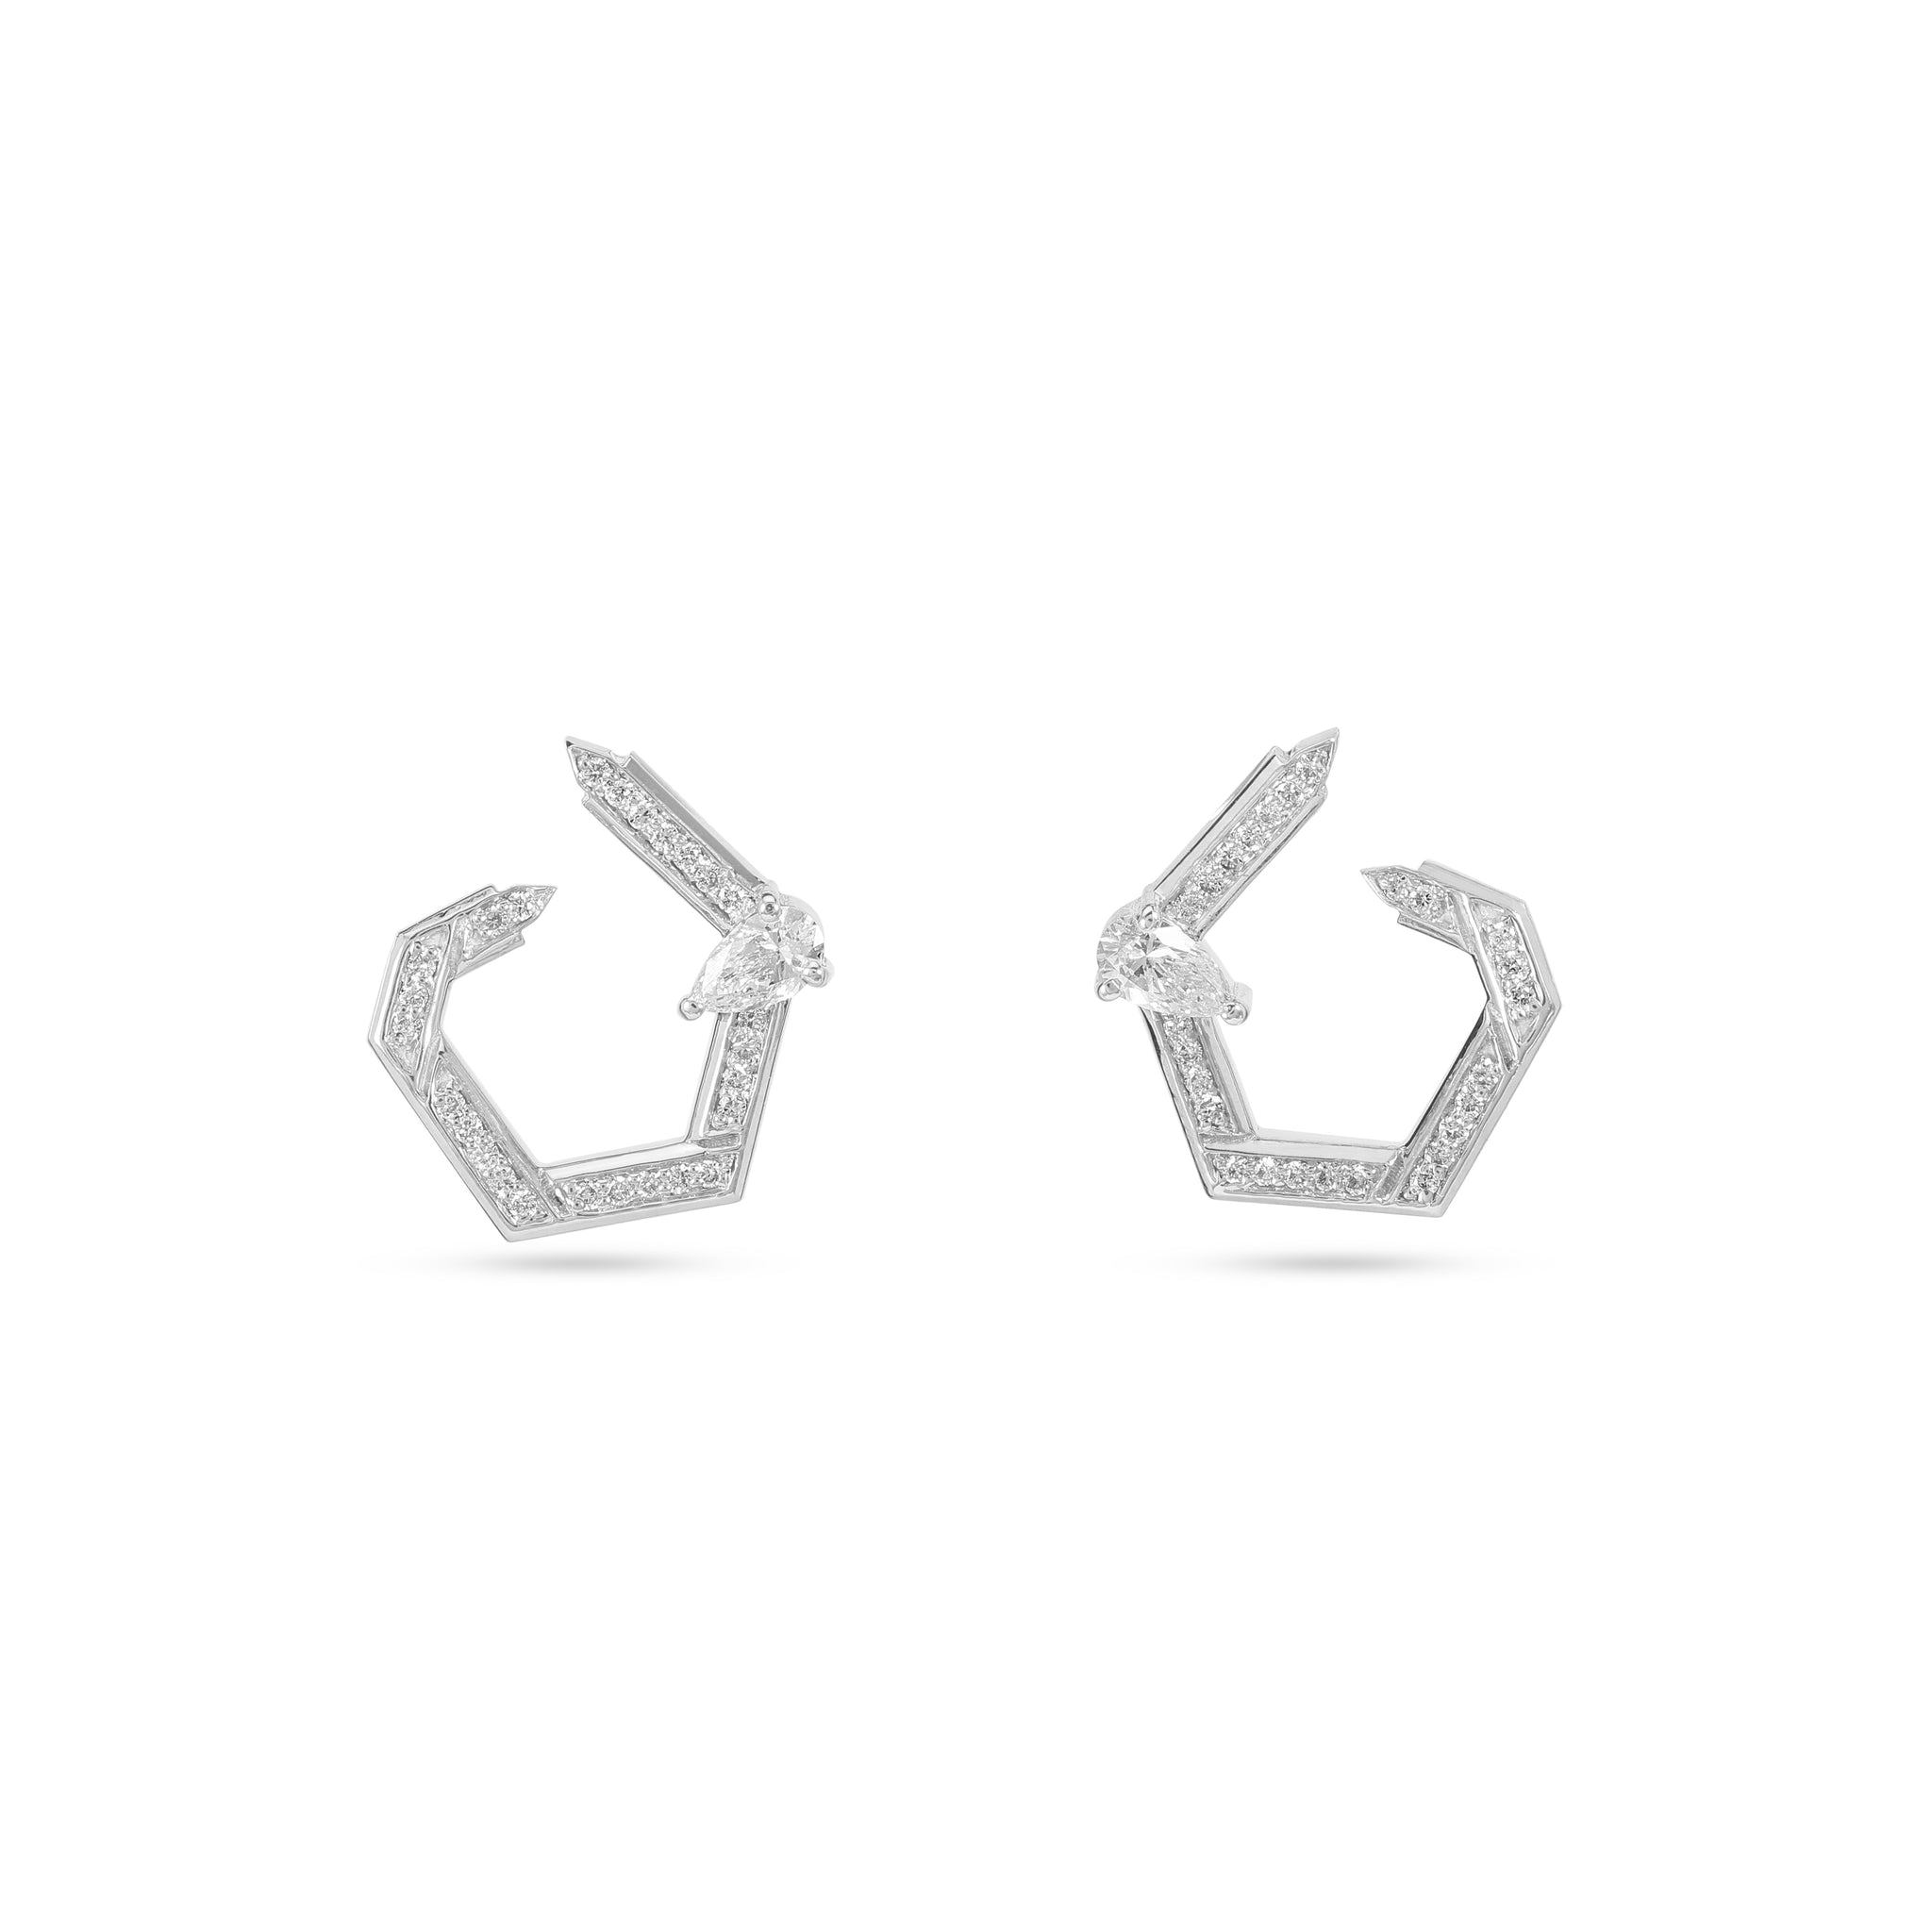 Hexad Diamond Earrings in White Gold